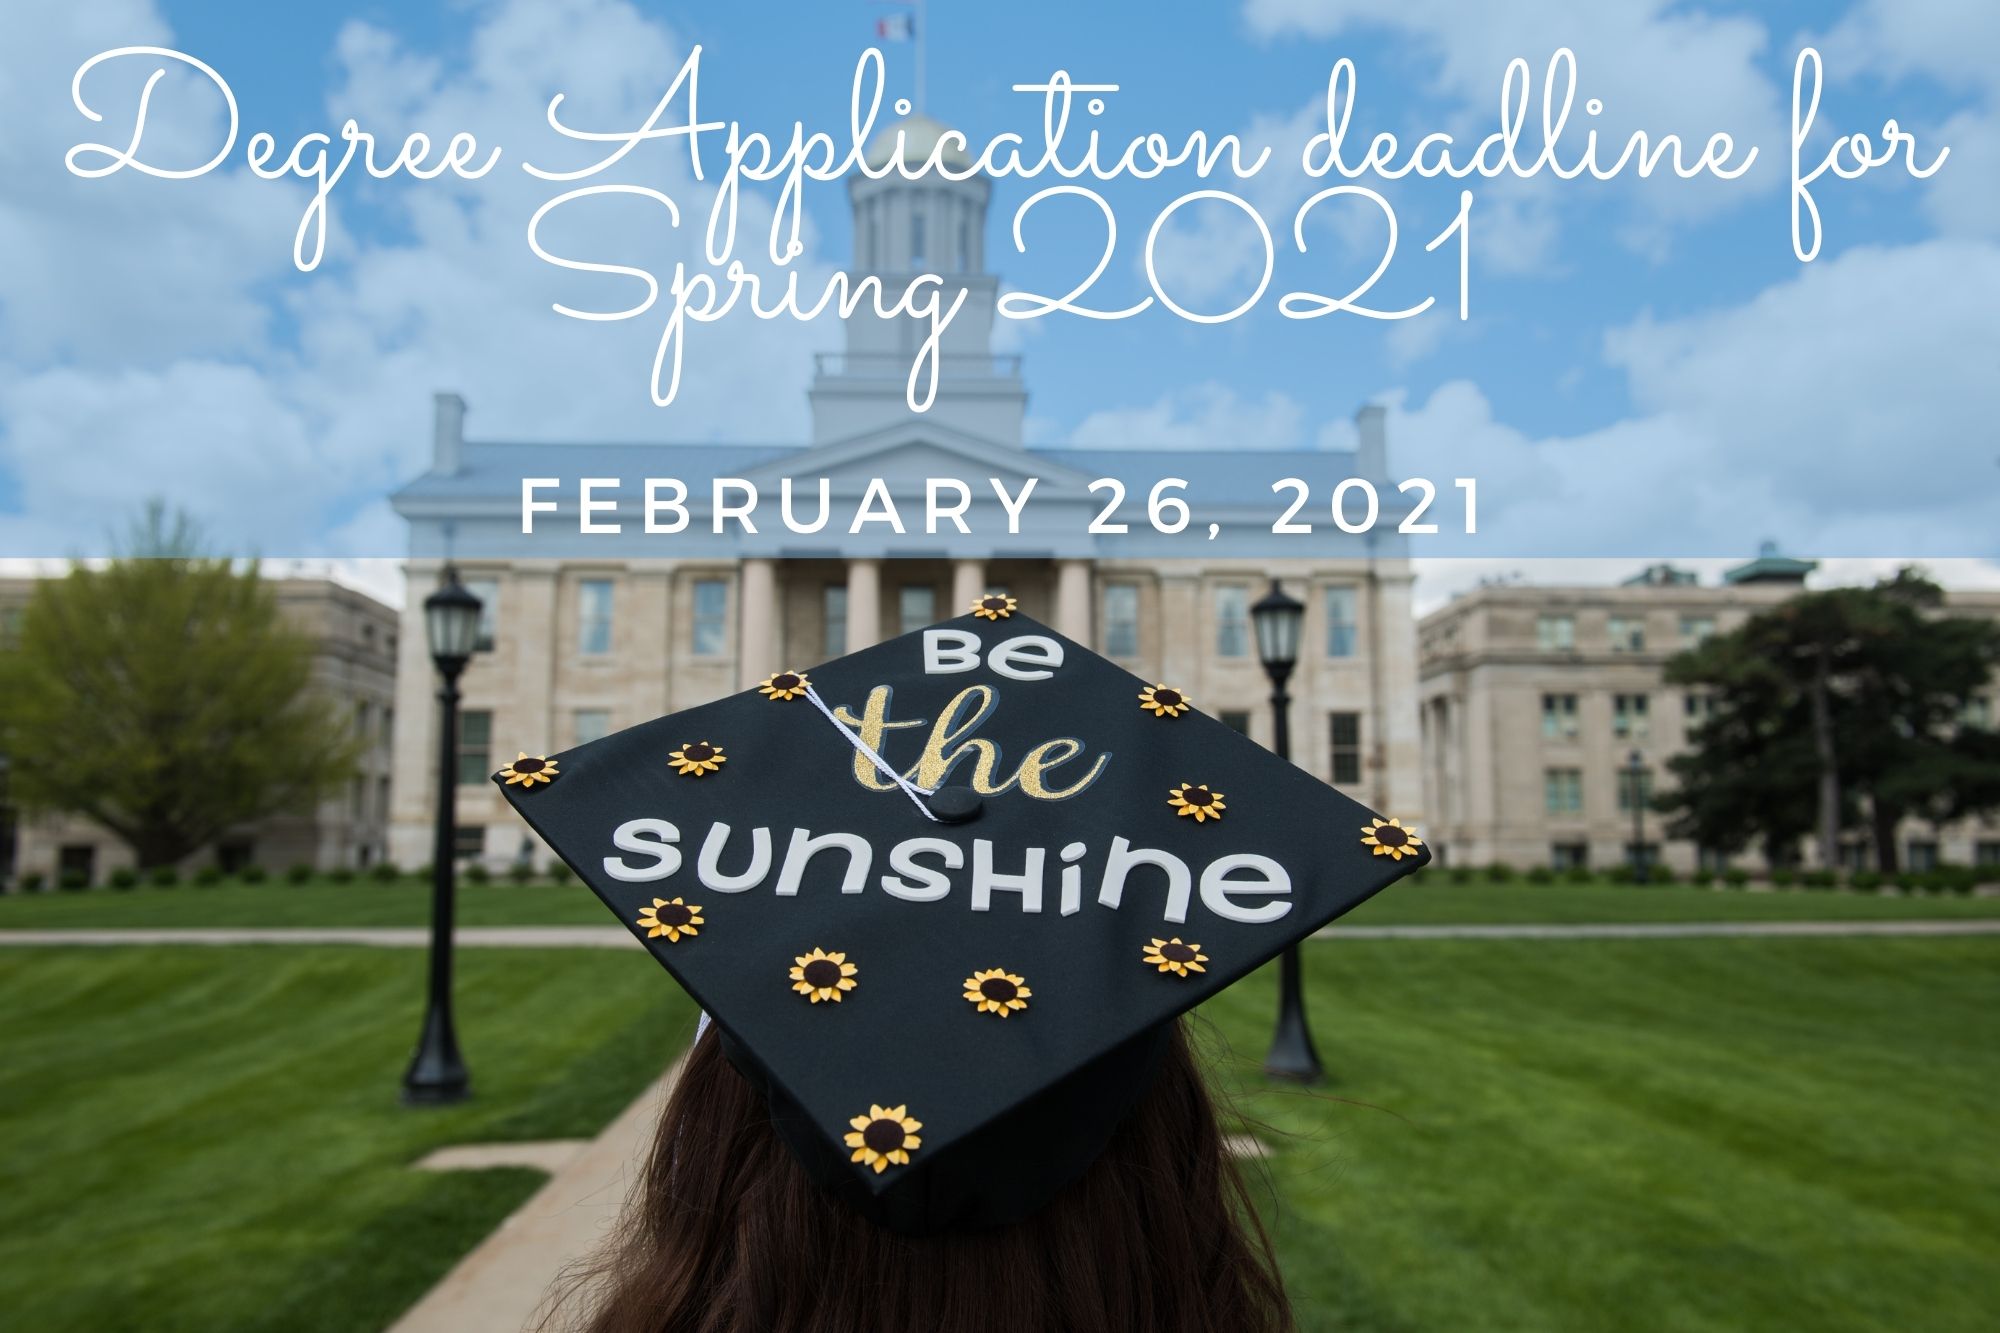 degree_application_deadline_for_spring_2021_1.jpg